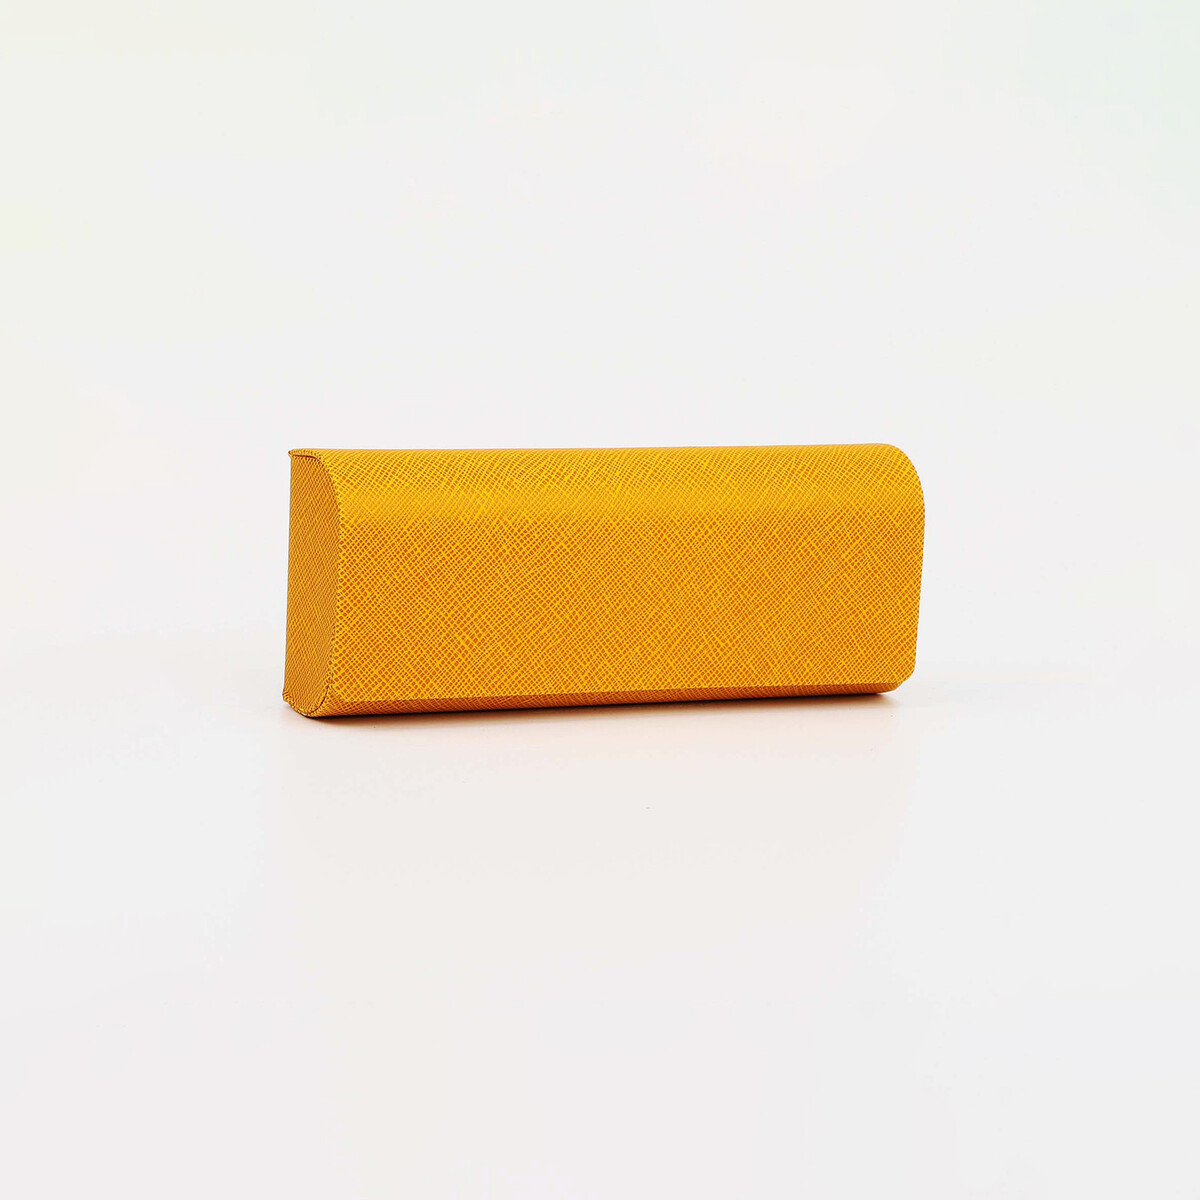 Футляр для очков на магните, 15.5 см х 3 см х 6 см, салфетка, цвет желтый салфетка для очков